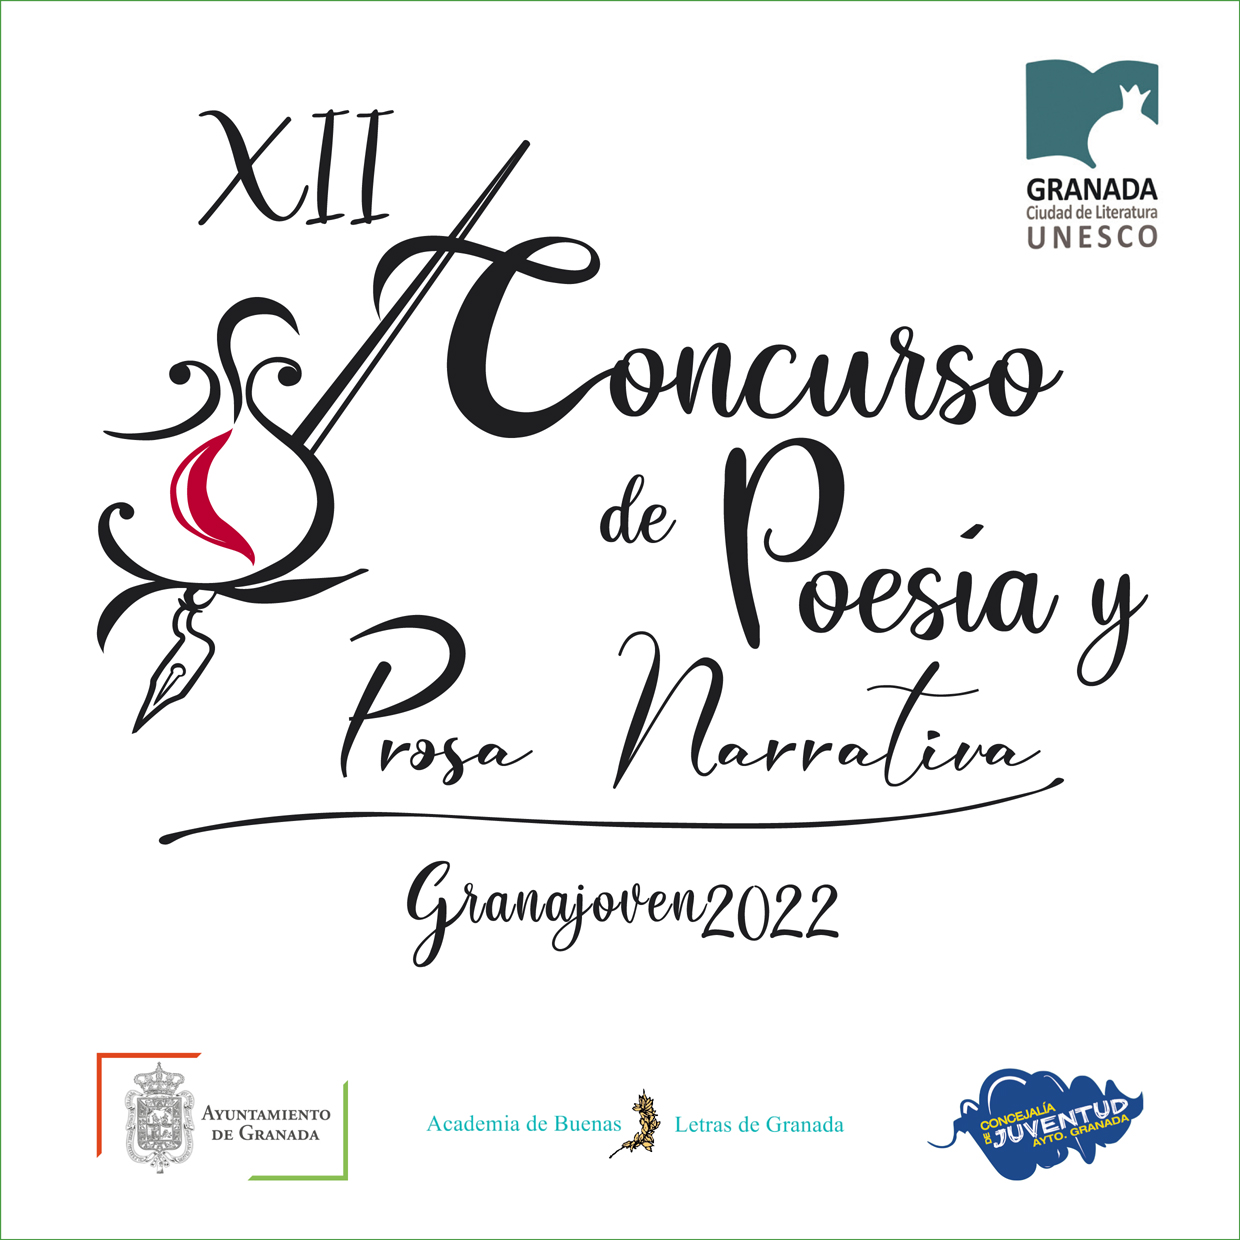 FALLO XII Concurso Prosa y Poesia Granajoven 2022